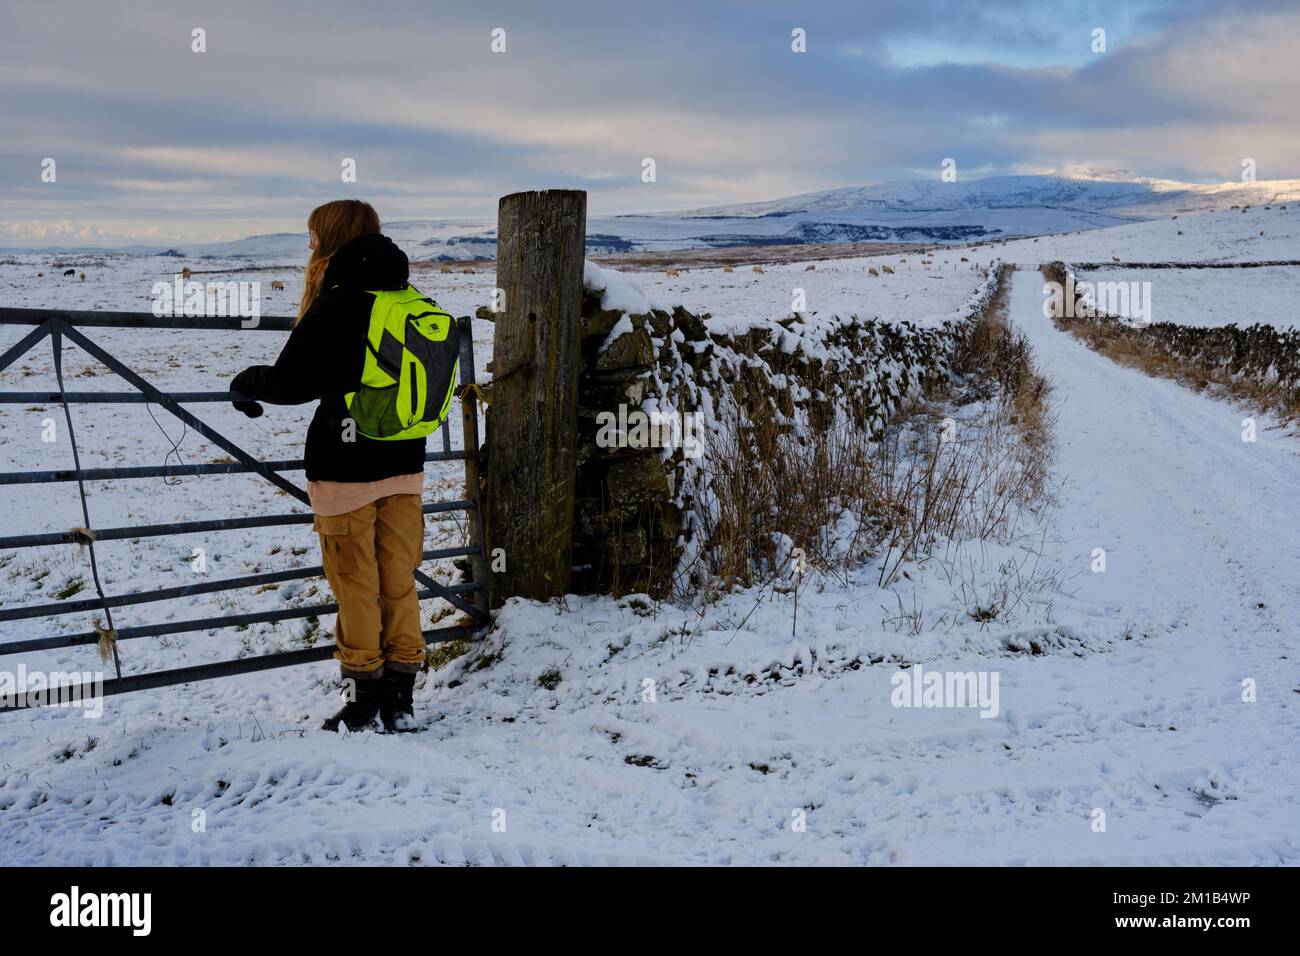 Une adolescente admire la vue sur une promenade d'hiver dans la neige dans la campagne des Yorkshire Dales avec la colline d'Ingleborough en arrière-plan Banque D'Images